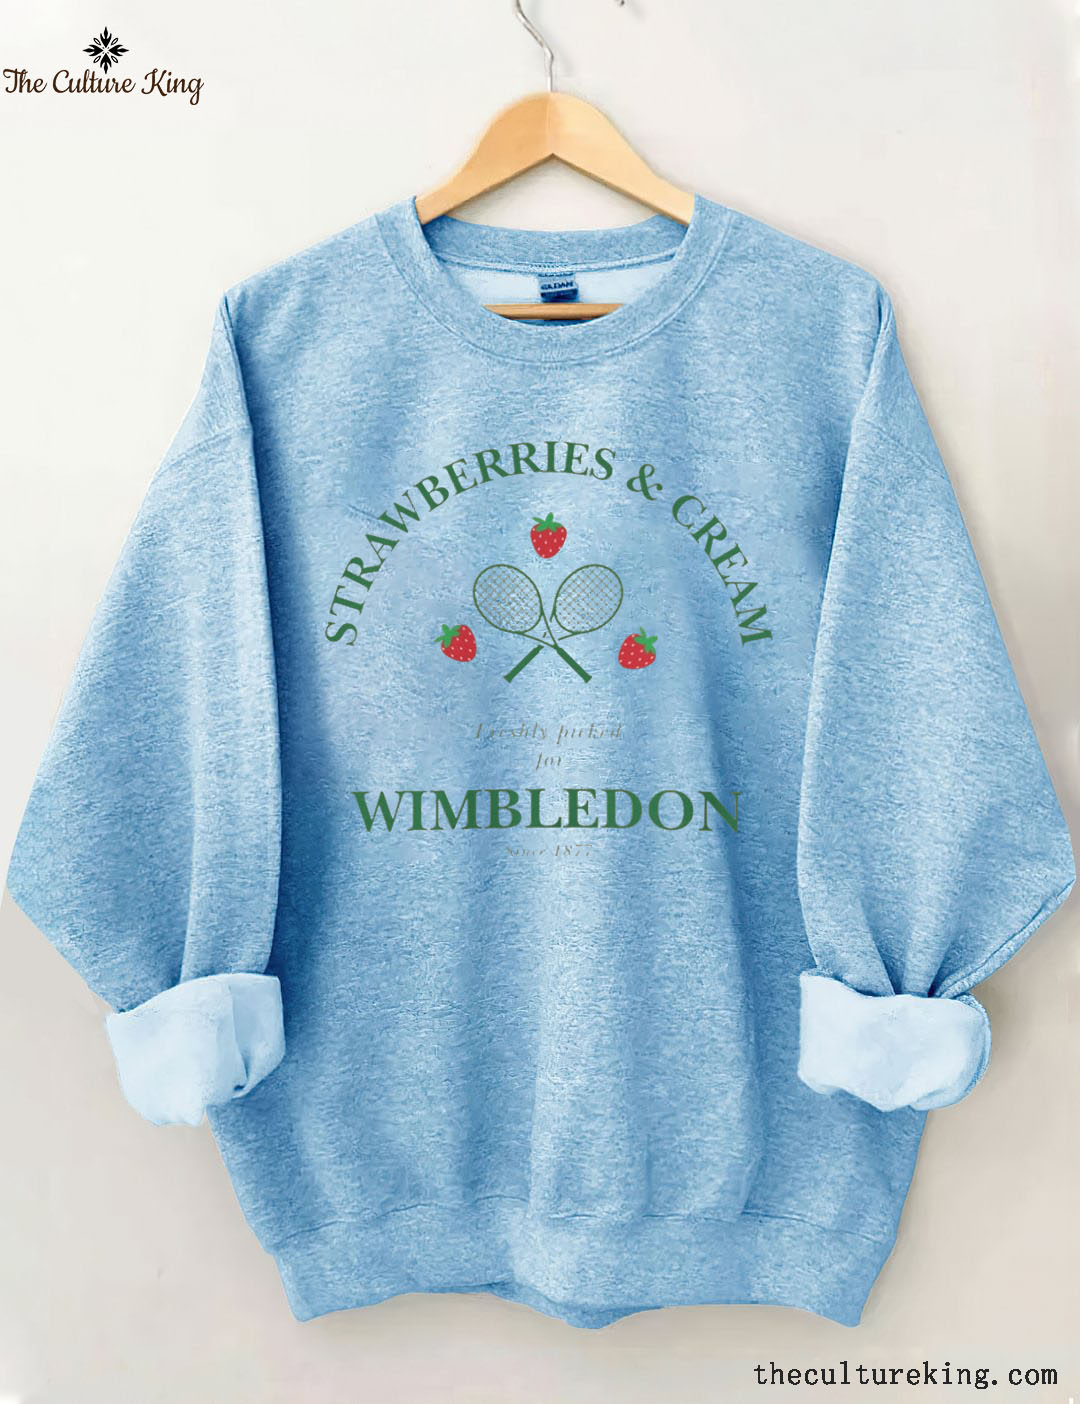 WIMBLEDON Strawberries & Cream  Sweatshirt